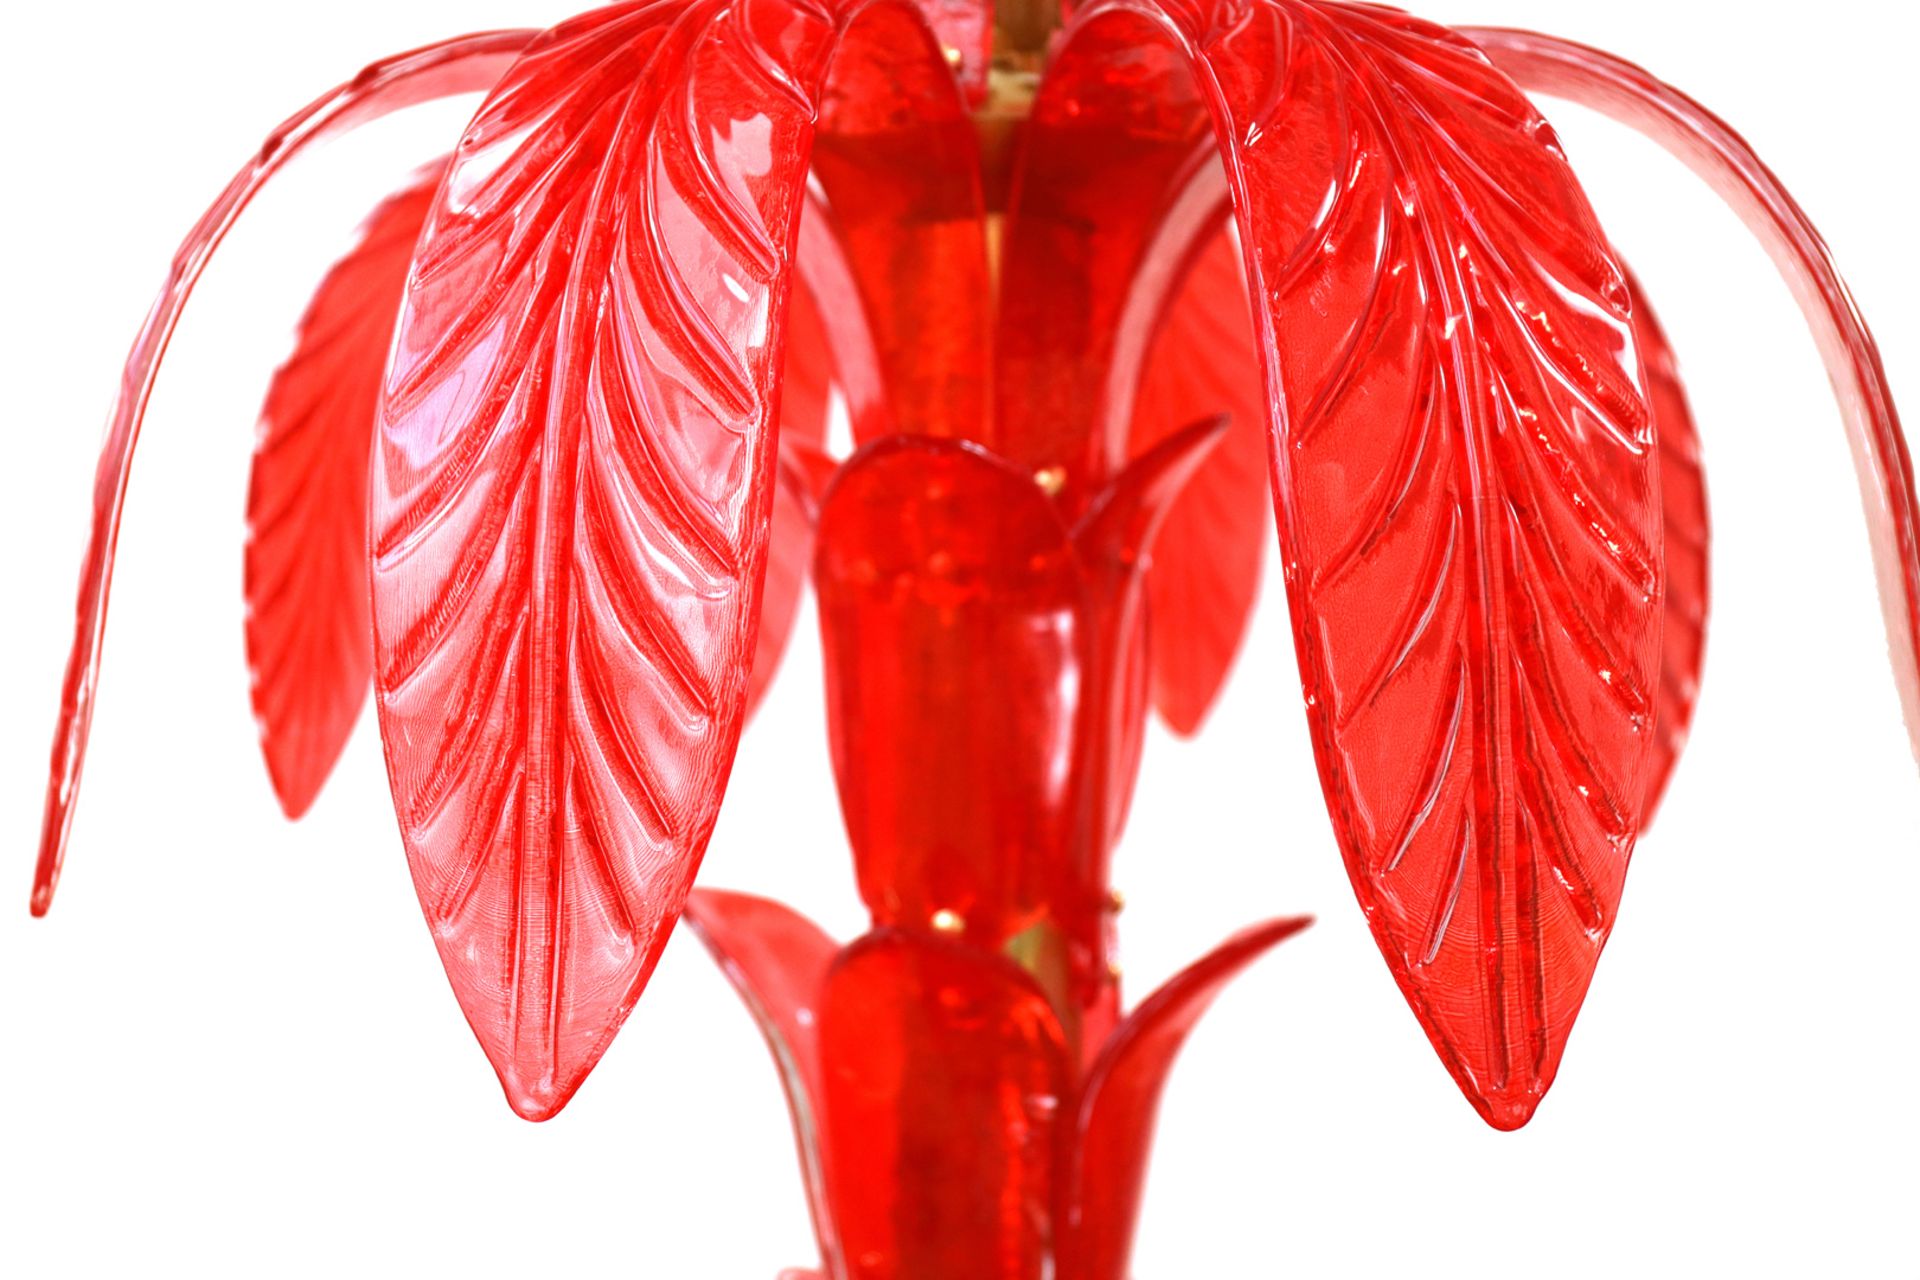 Murano Glaspalme als Lampe, 20 Jh., rotes transluzides Glas, H 210 cm. (Kein Versand, für - Image 3 of 3